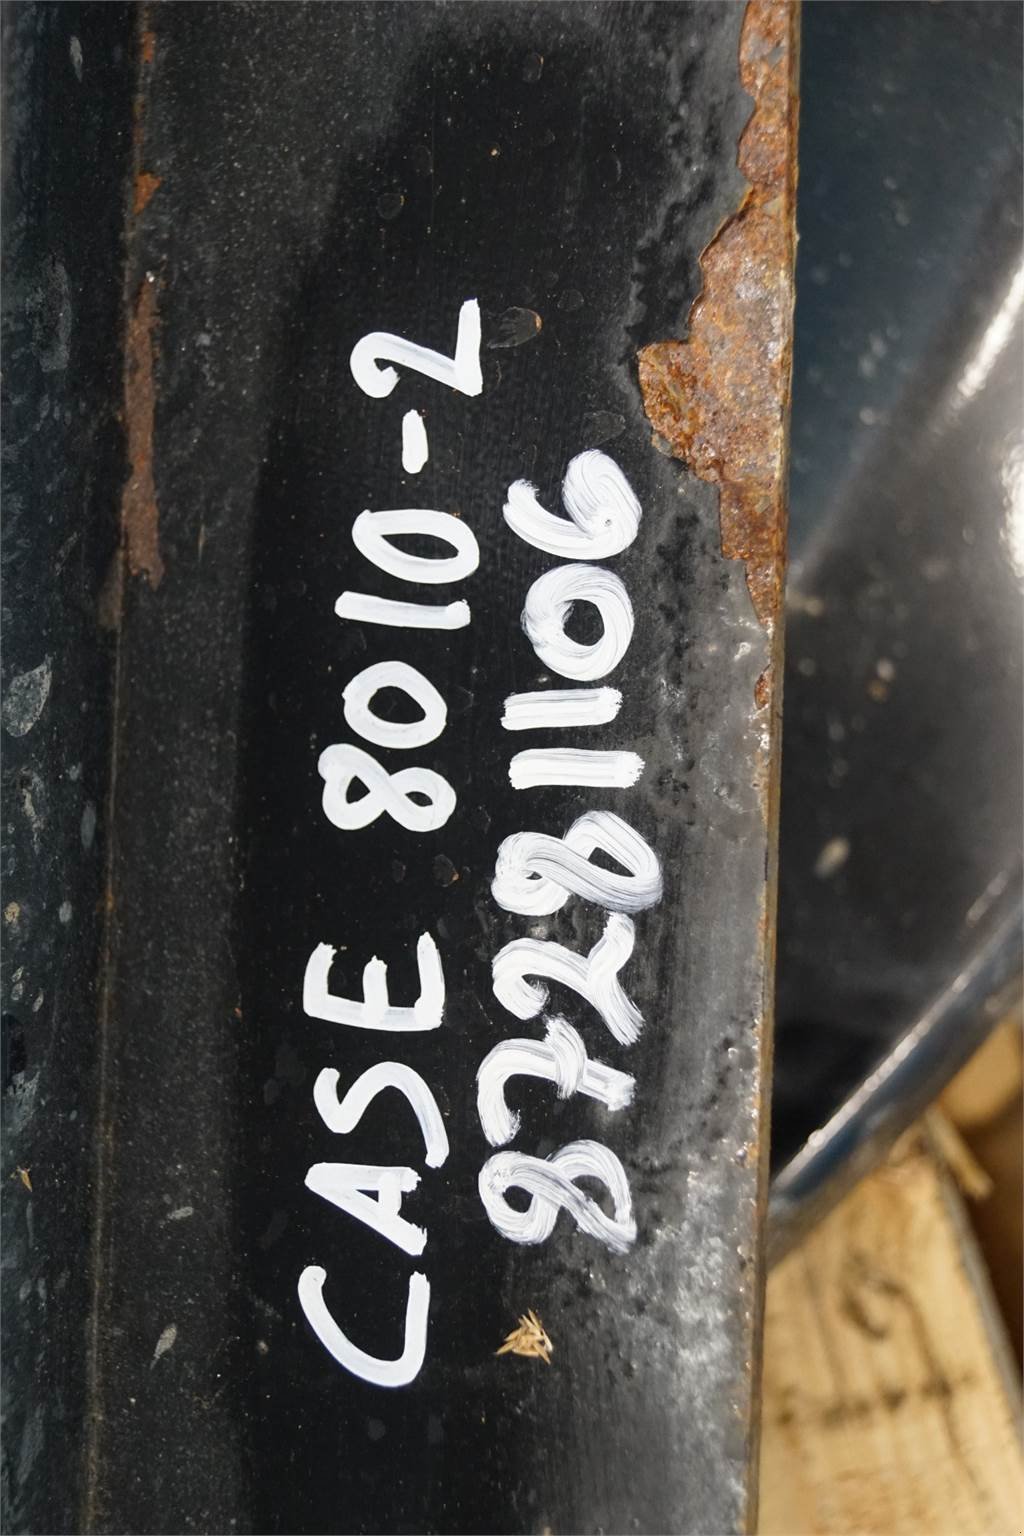 Sonstiges des Typs Case IH 8010, Gebrauchtmaschine in Hemmet (Bild 7)